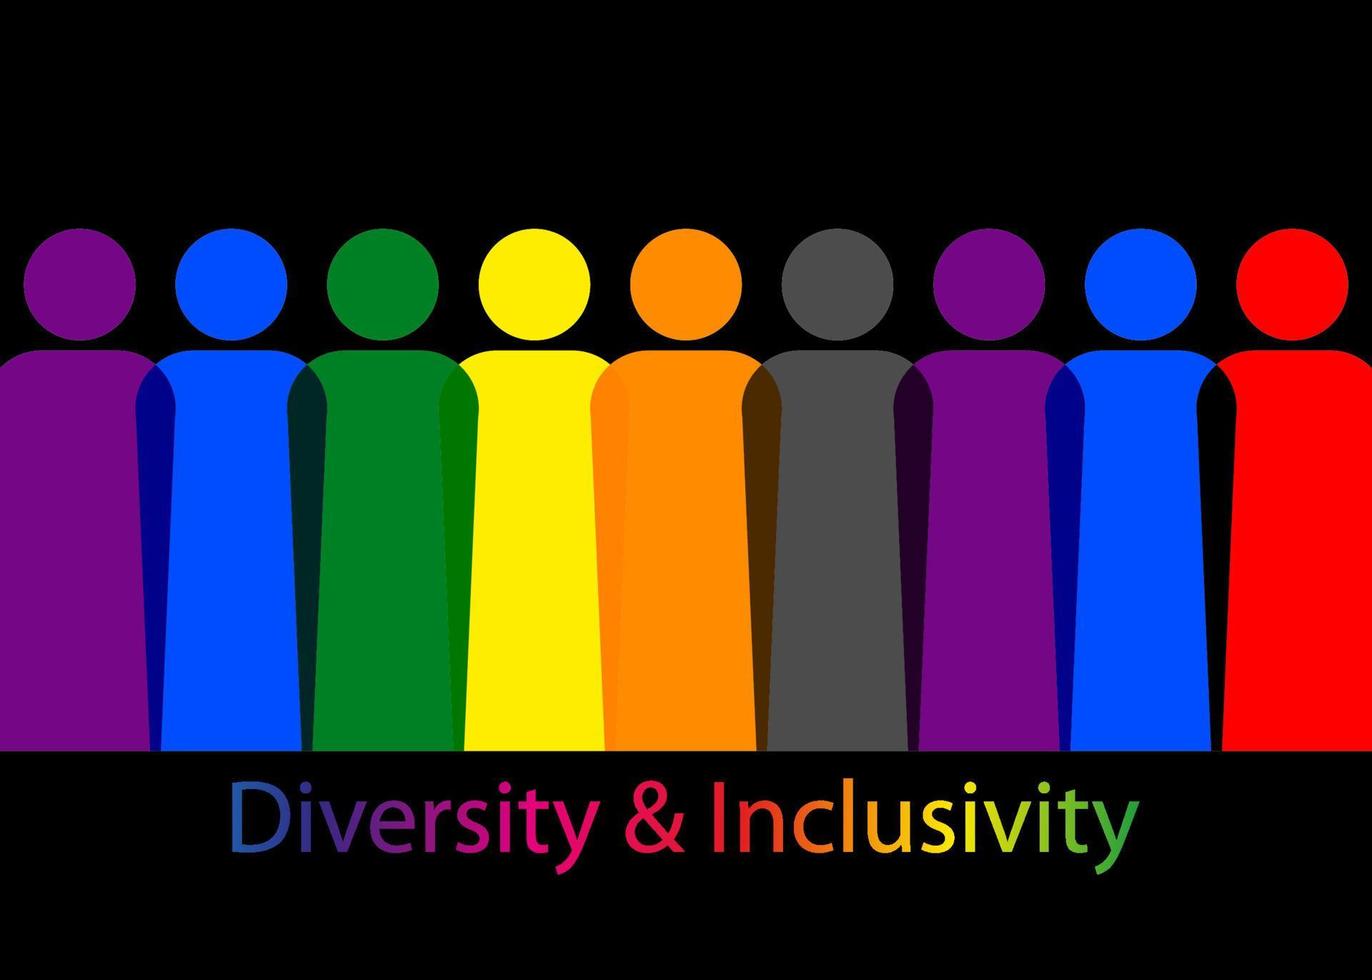 inclusione e diversità. sagome di persone e set lgbtq, persone ritratto logo vettoriale per sito web, banner concetto di orgoglio gay, vettore di segno arcobaleno colorato isolato su sfondo nero